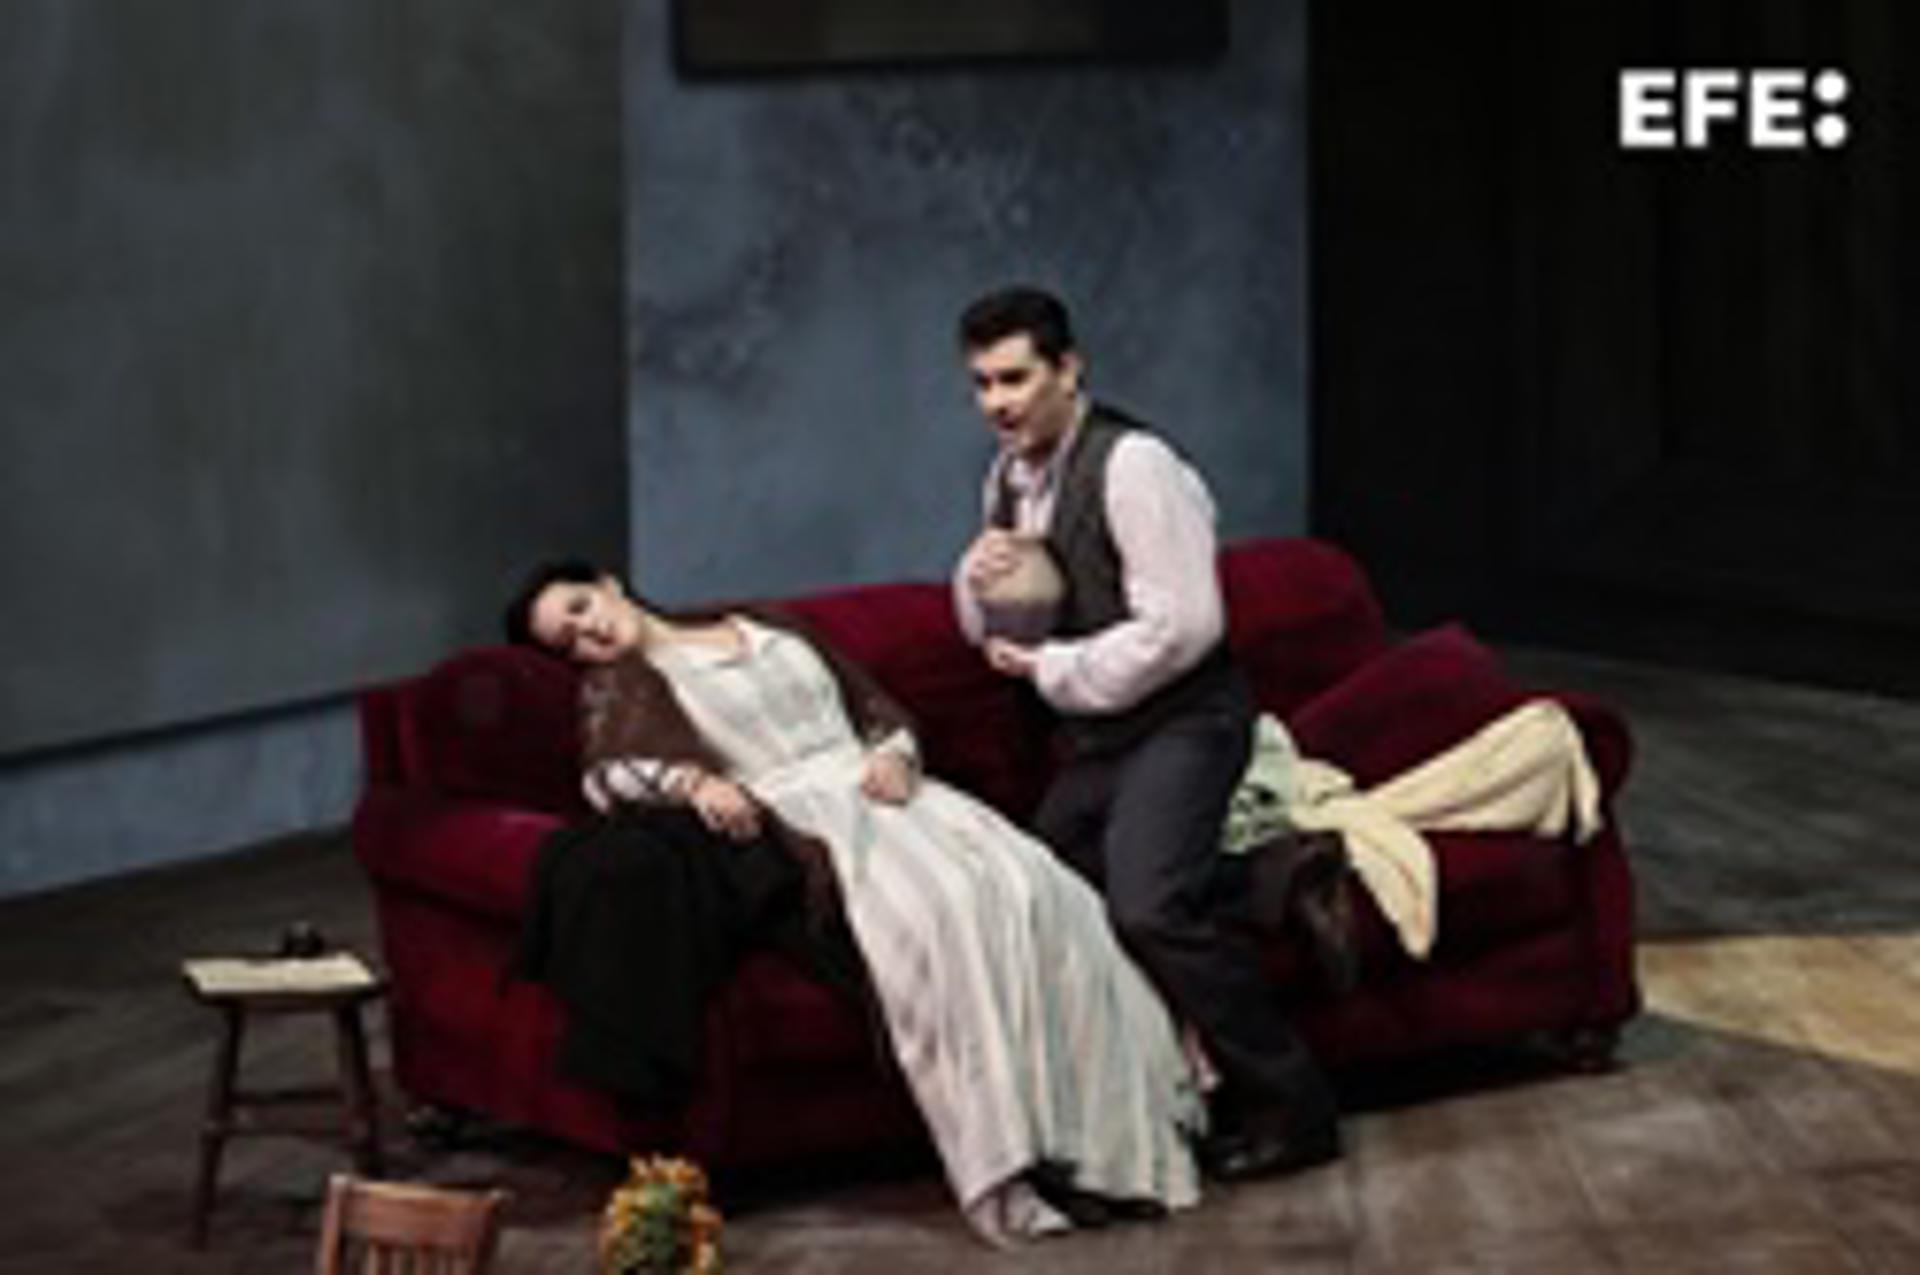 El tenor Saimir Pirgu, como Rodolfo, y la soprano Federica Lombardi, como Mimí, protagonistas de la ópera 'La Bohème' en Les Arts. EFE/ Ana Escobar